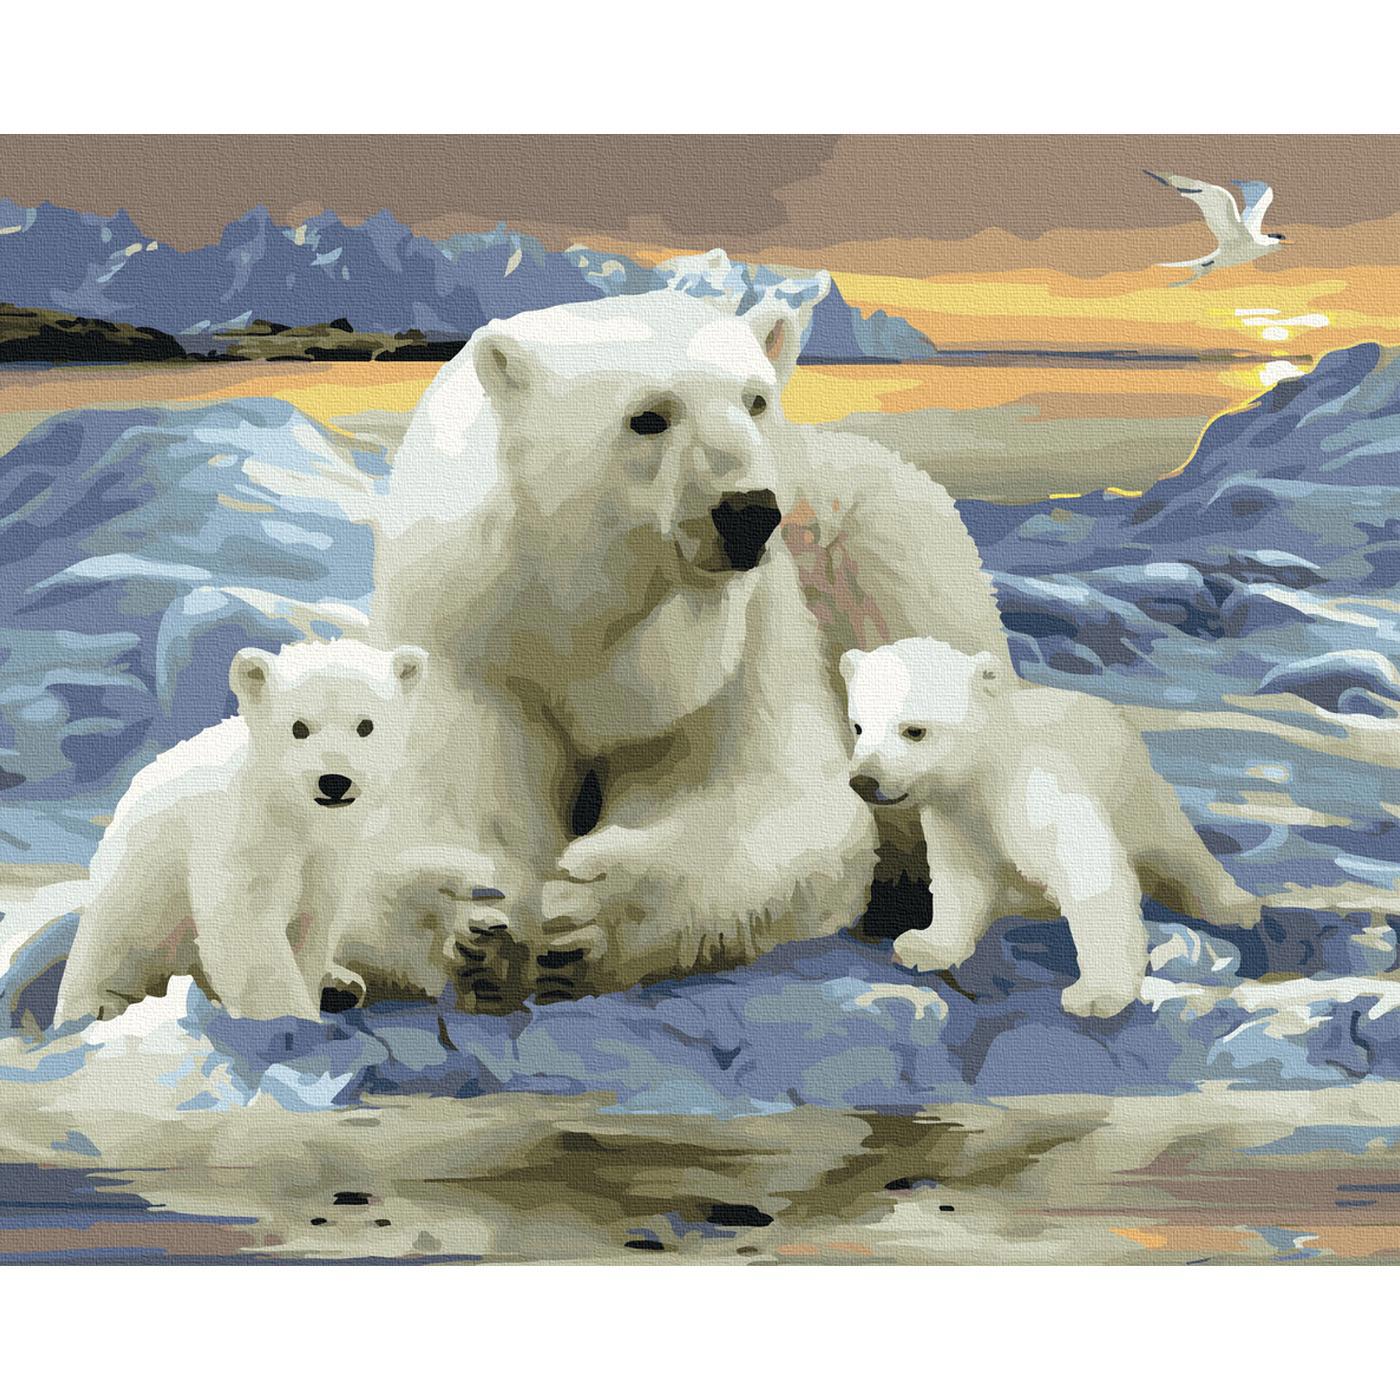 90305052 Картина по номерам 40х50 см Цветной холст Белые полярные медведи (30 цветов) STLM-0176445 MOLLY